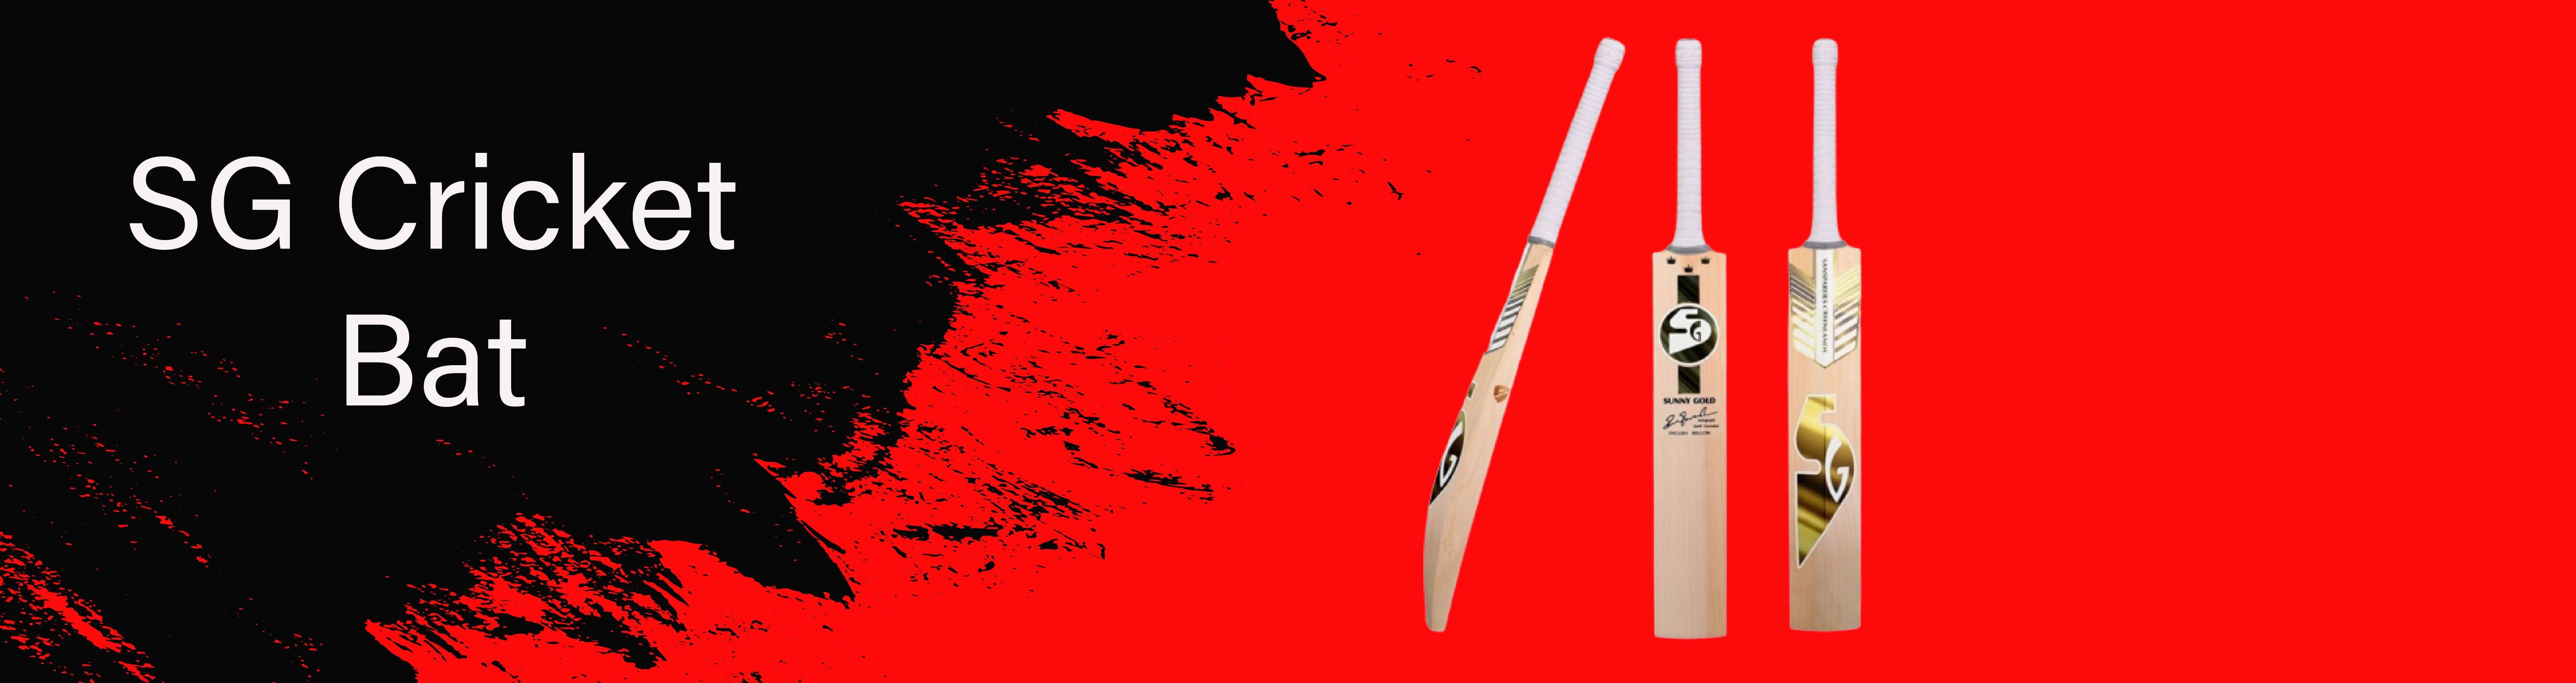 BATS - SG Cricket Bat -